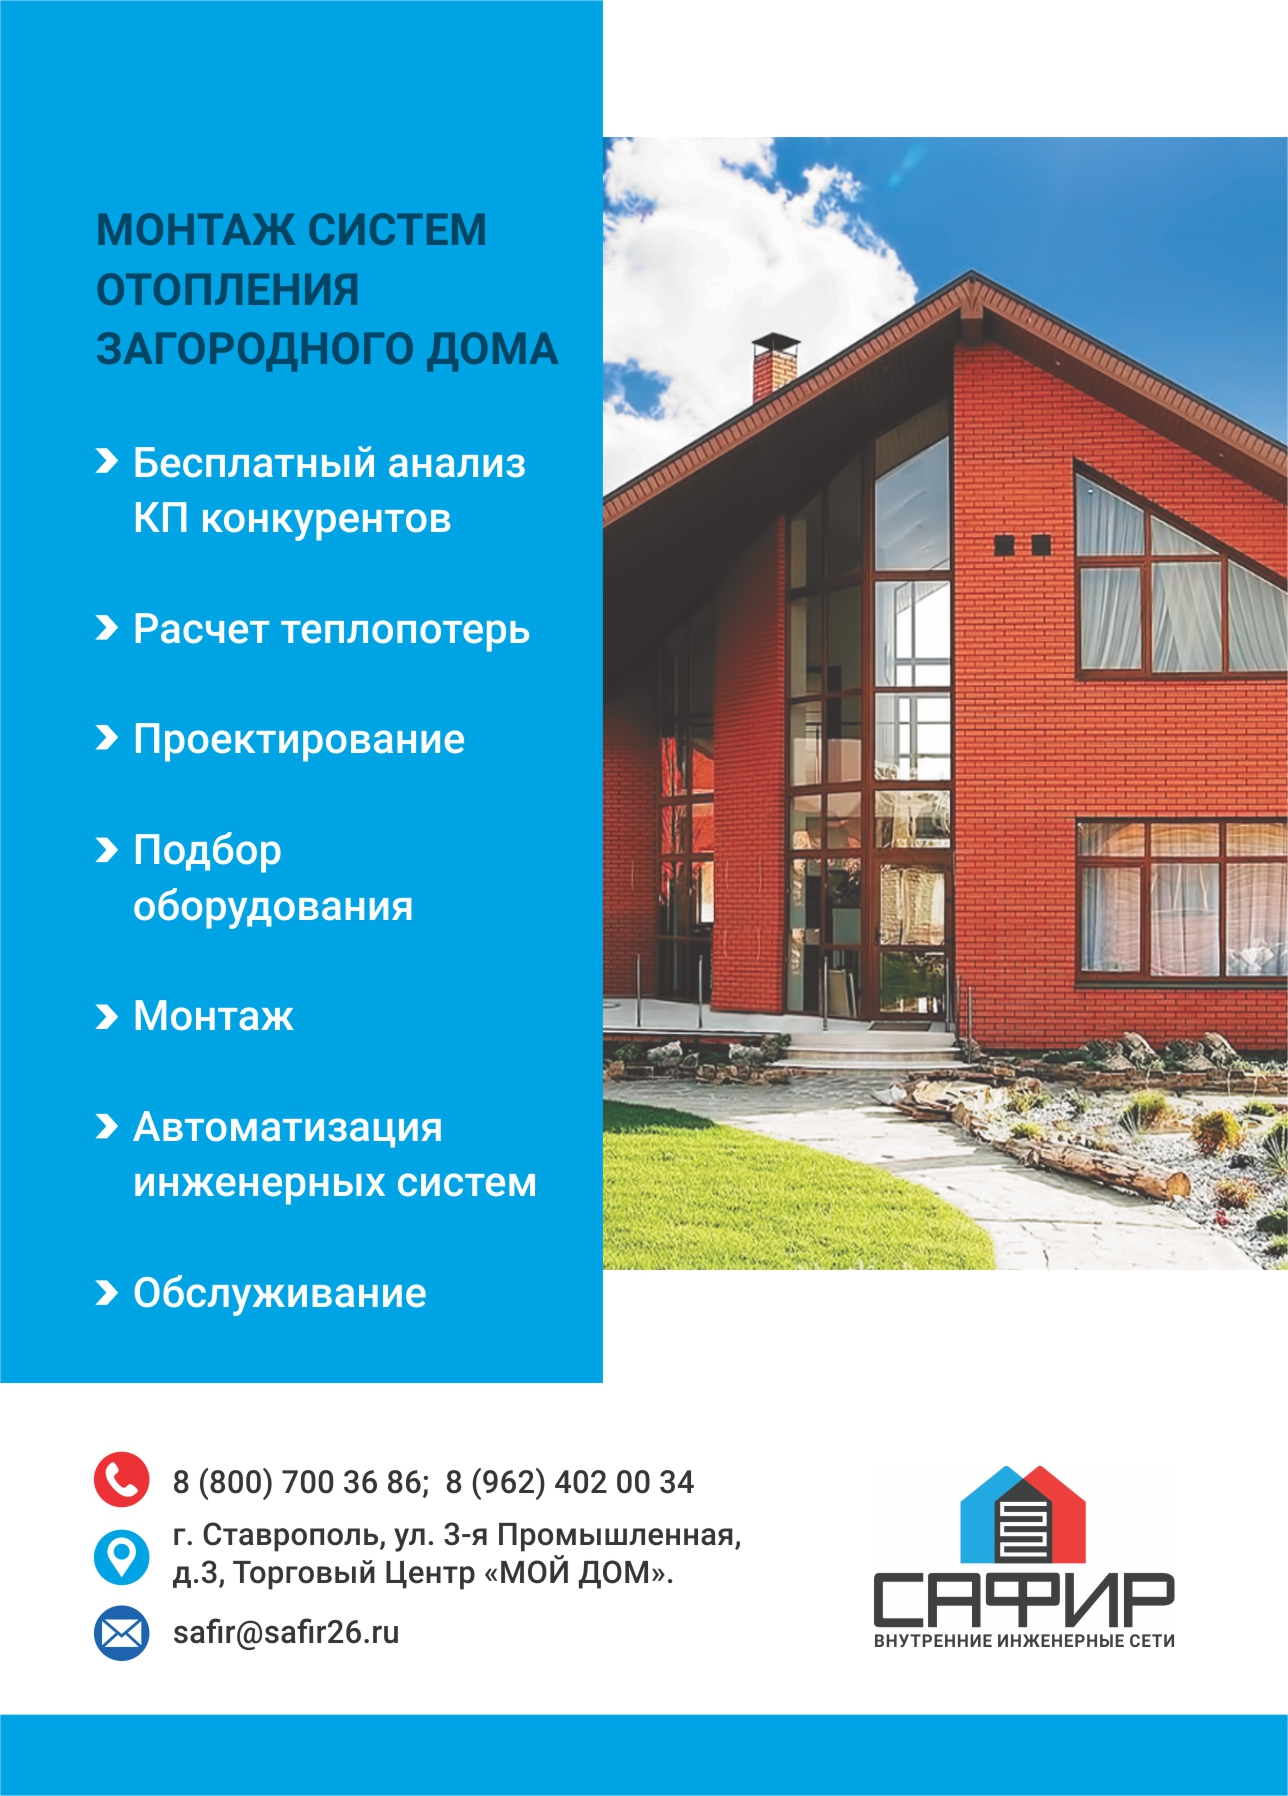 Отопление Вашего дома 1100 руб. за 1 кв.м.